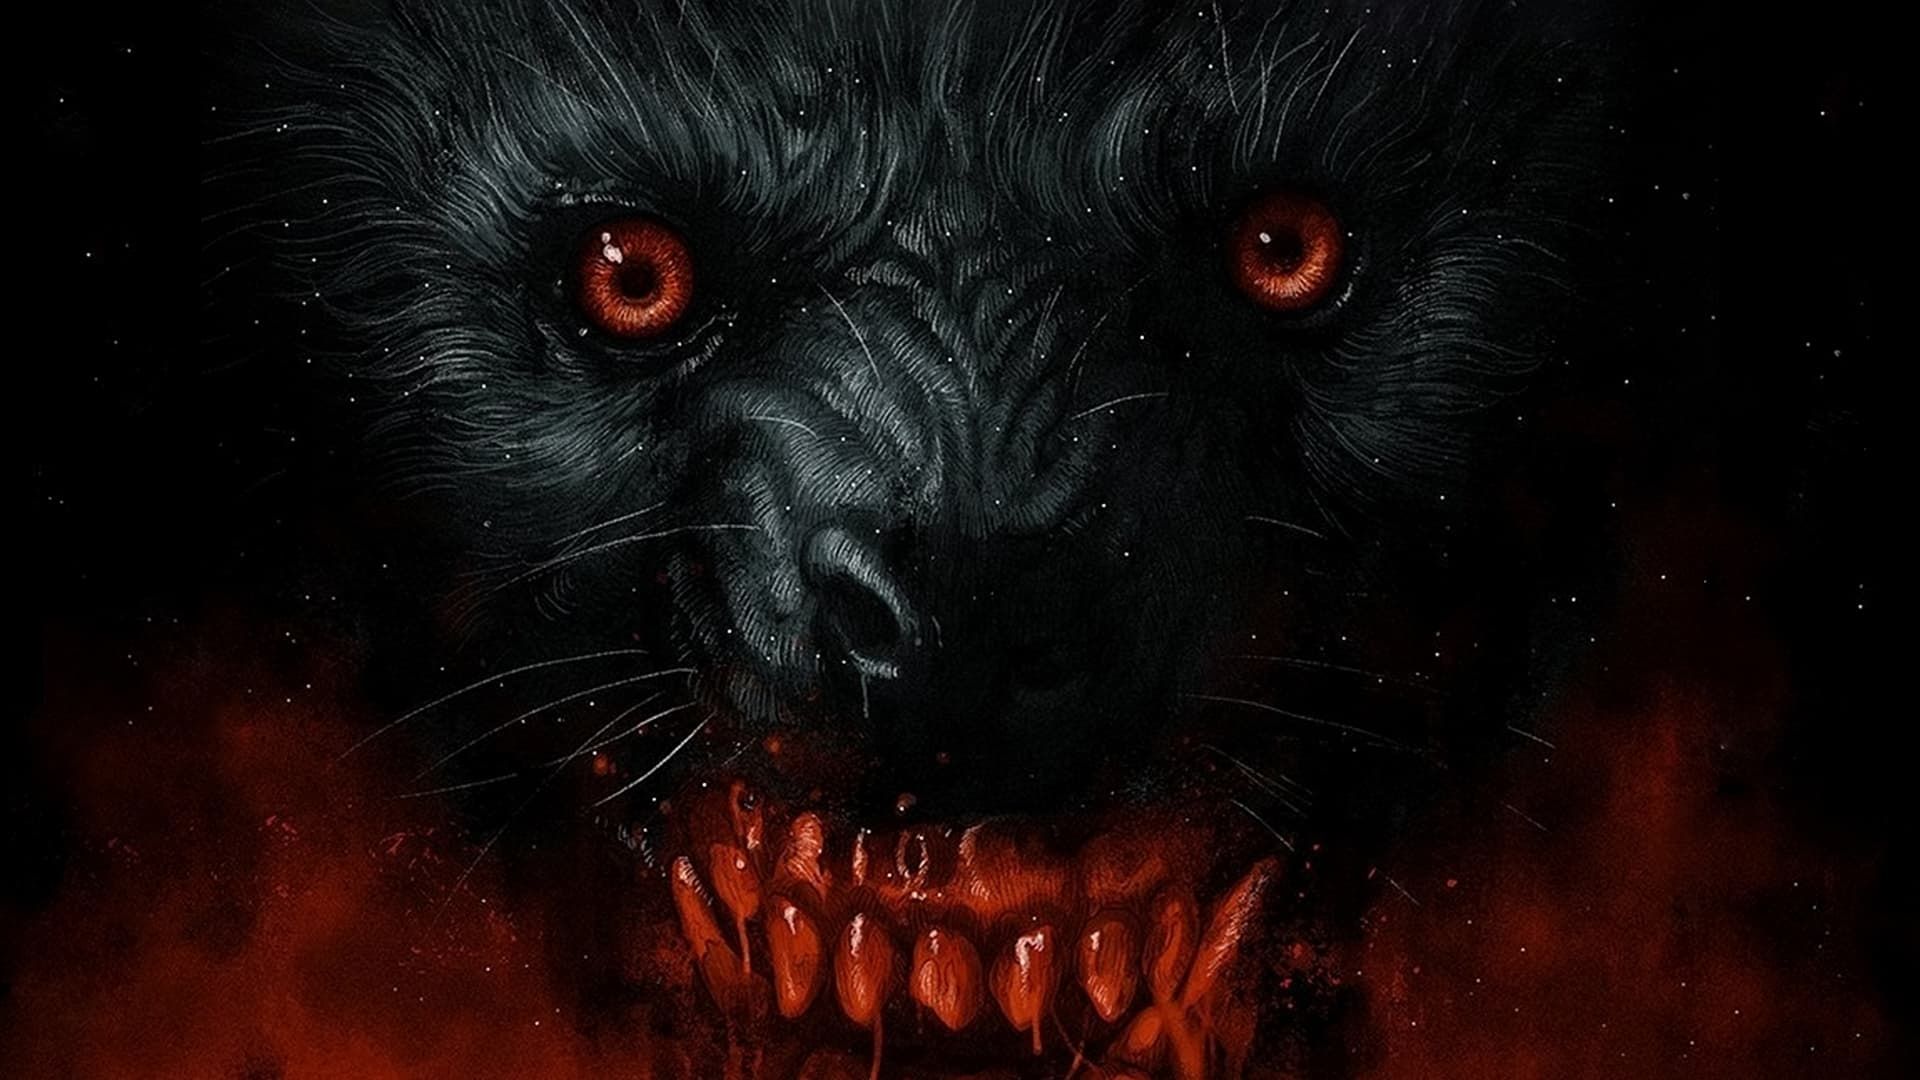 Watch The Night of the Werewolf (1981) Full Movie Free Online - Plex